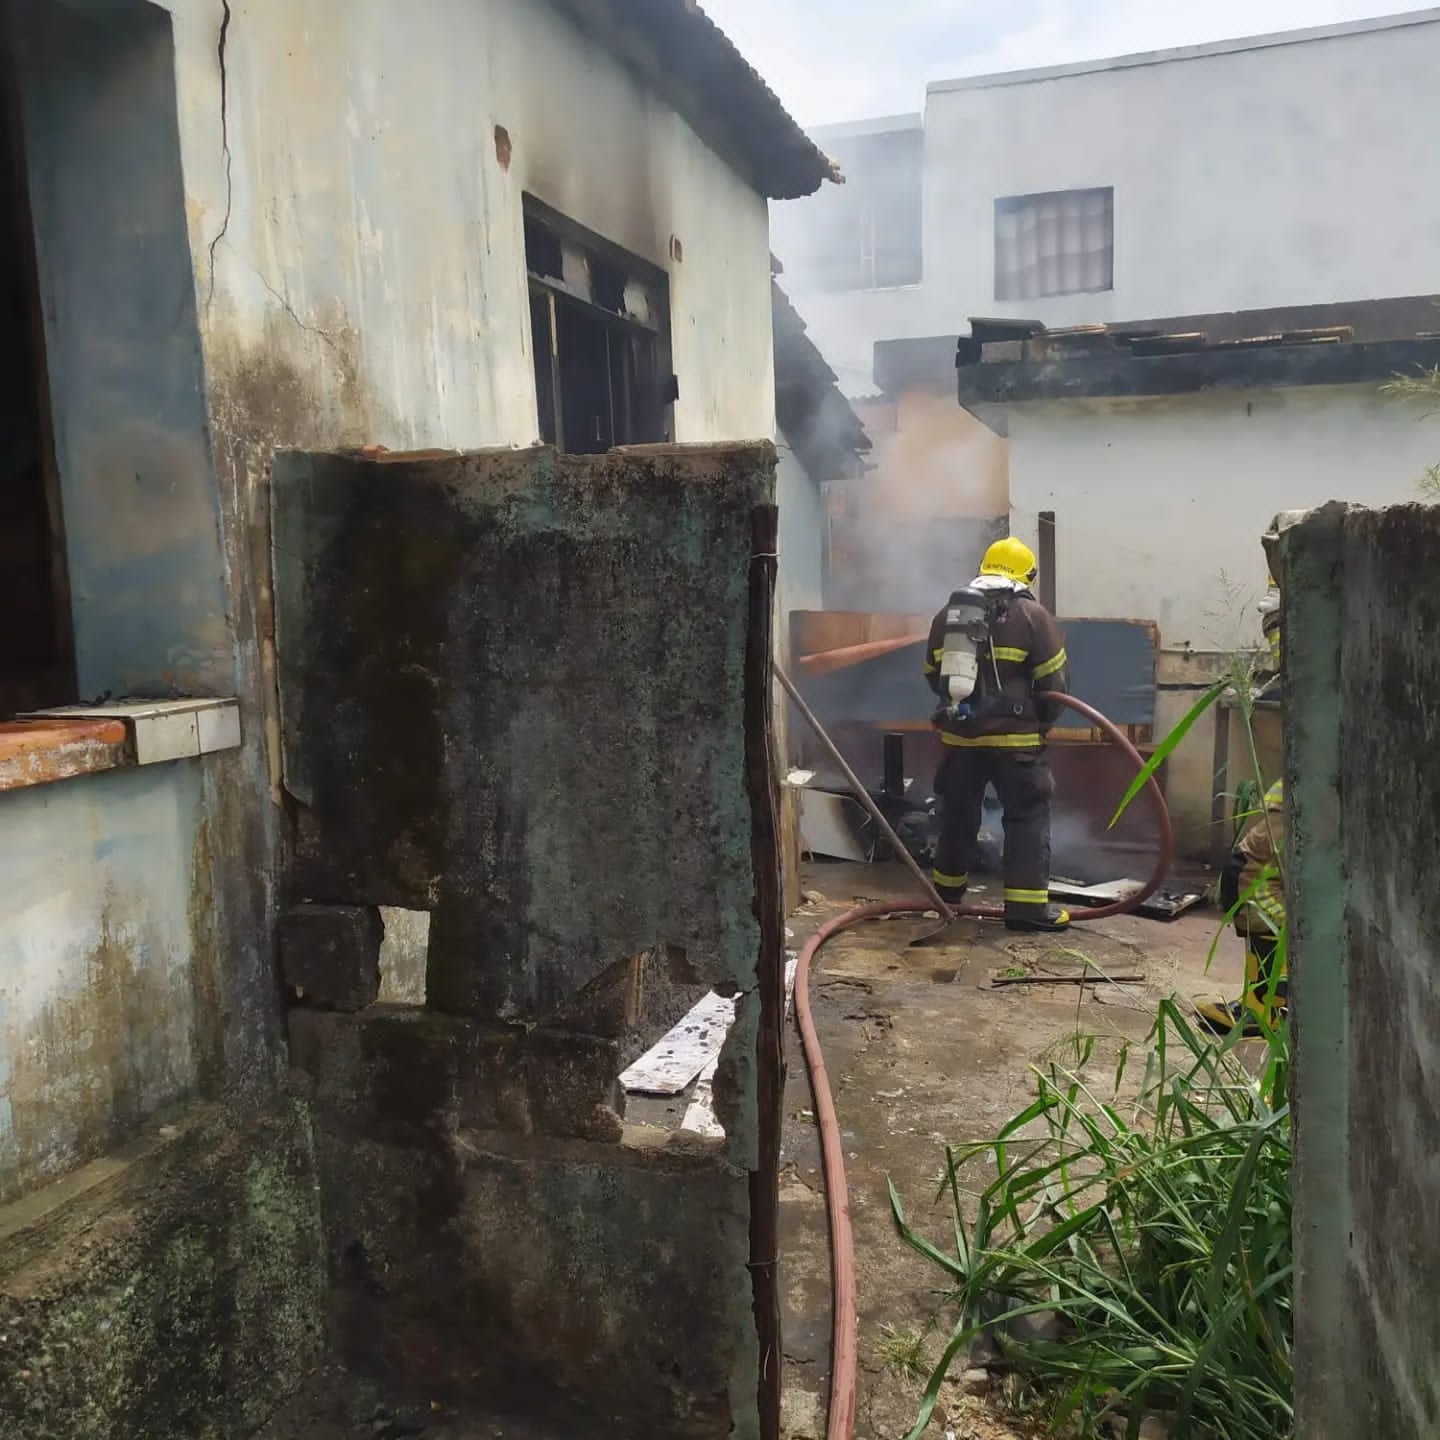 Bombeiros combatem incêndio em casa abandonada em Arcos